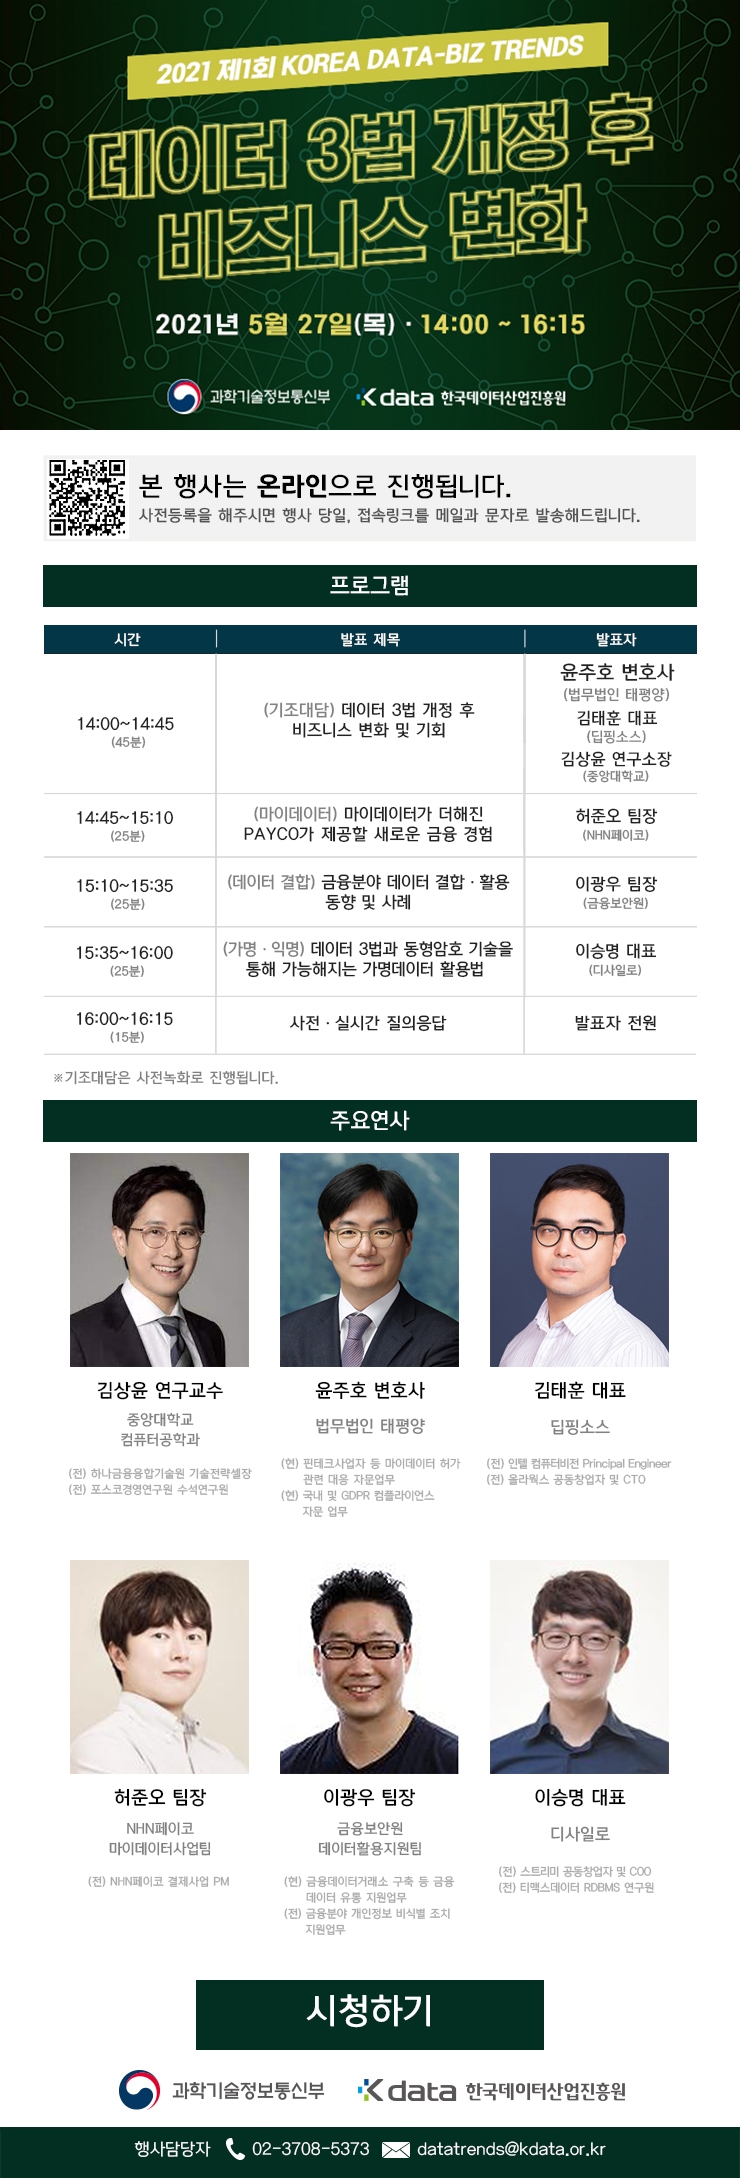 2021 제1회 KOREA DATA-BIZ TRENDS 온라인 행사 안내